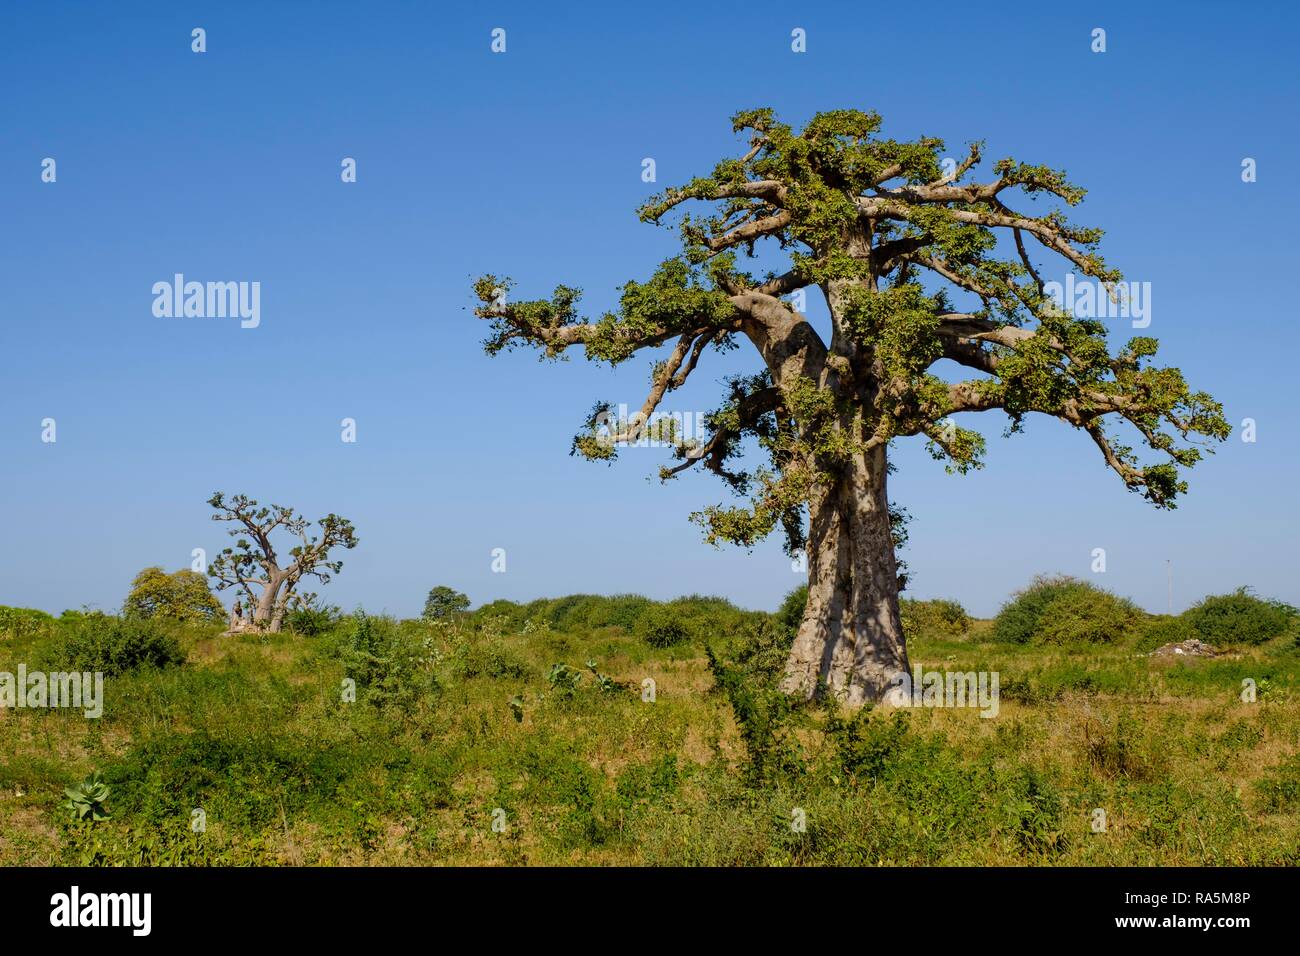 Le baobab africain (Adansonia digitata), région de Dakar, Sénégal Banque D'Images